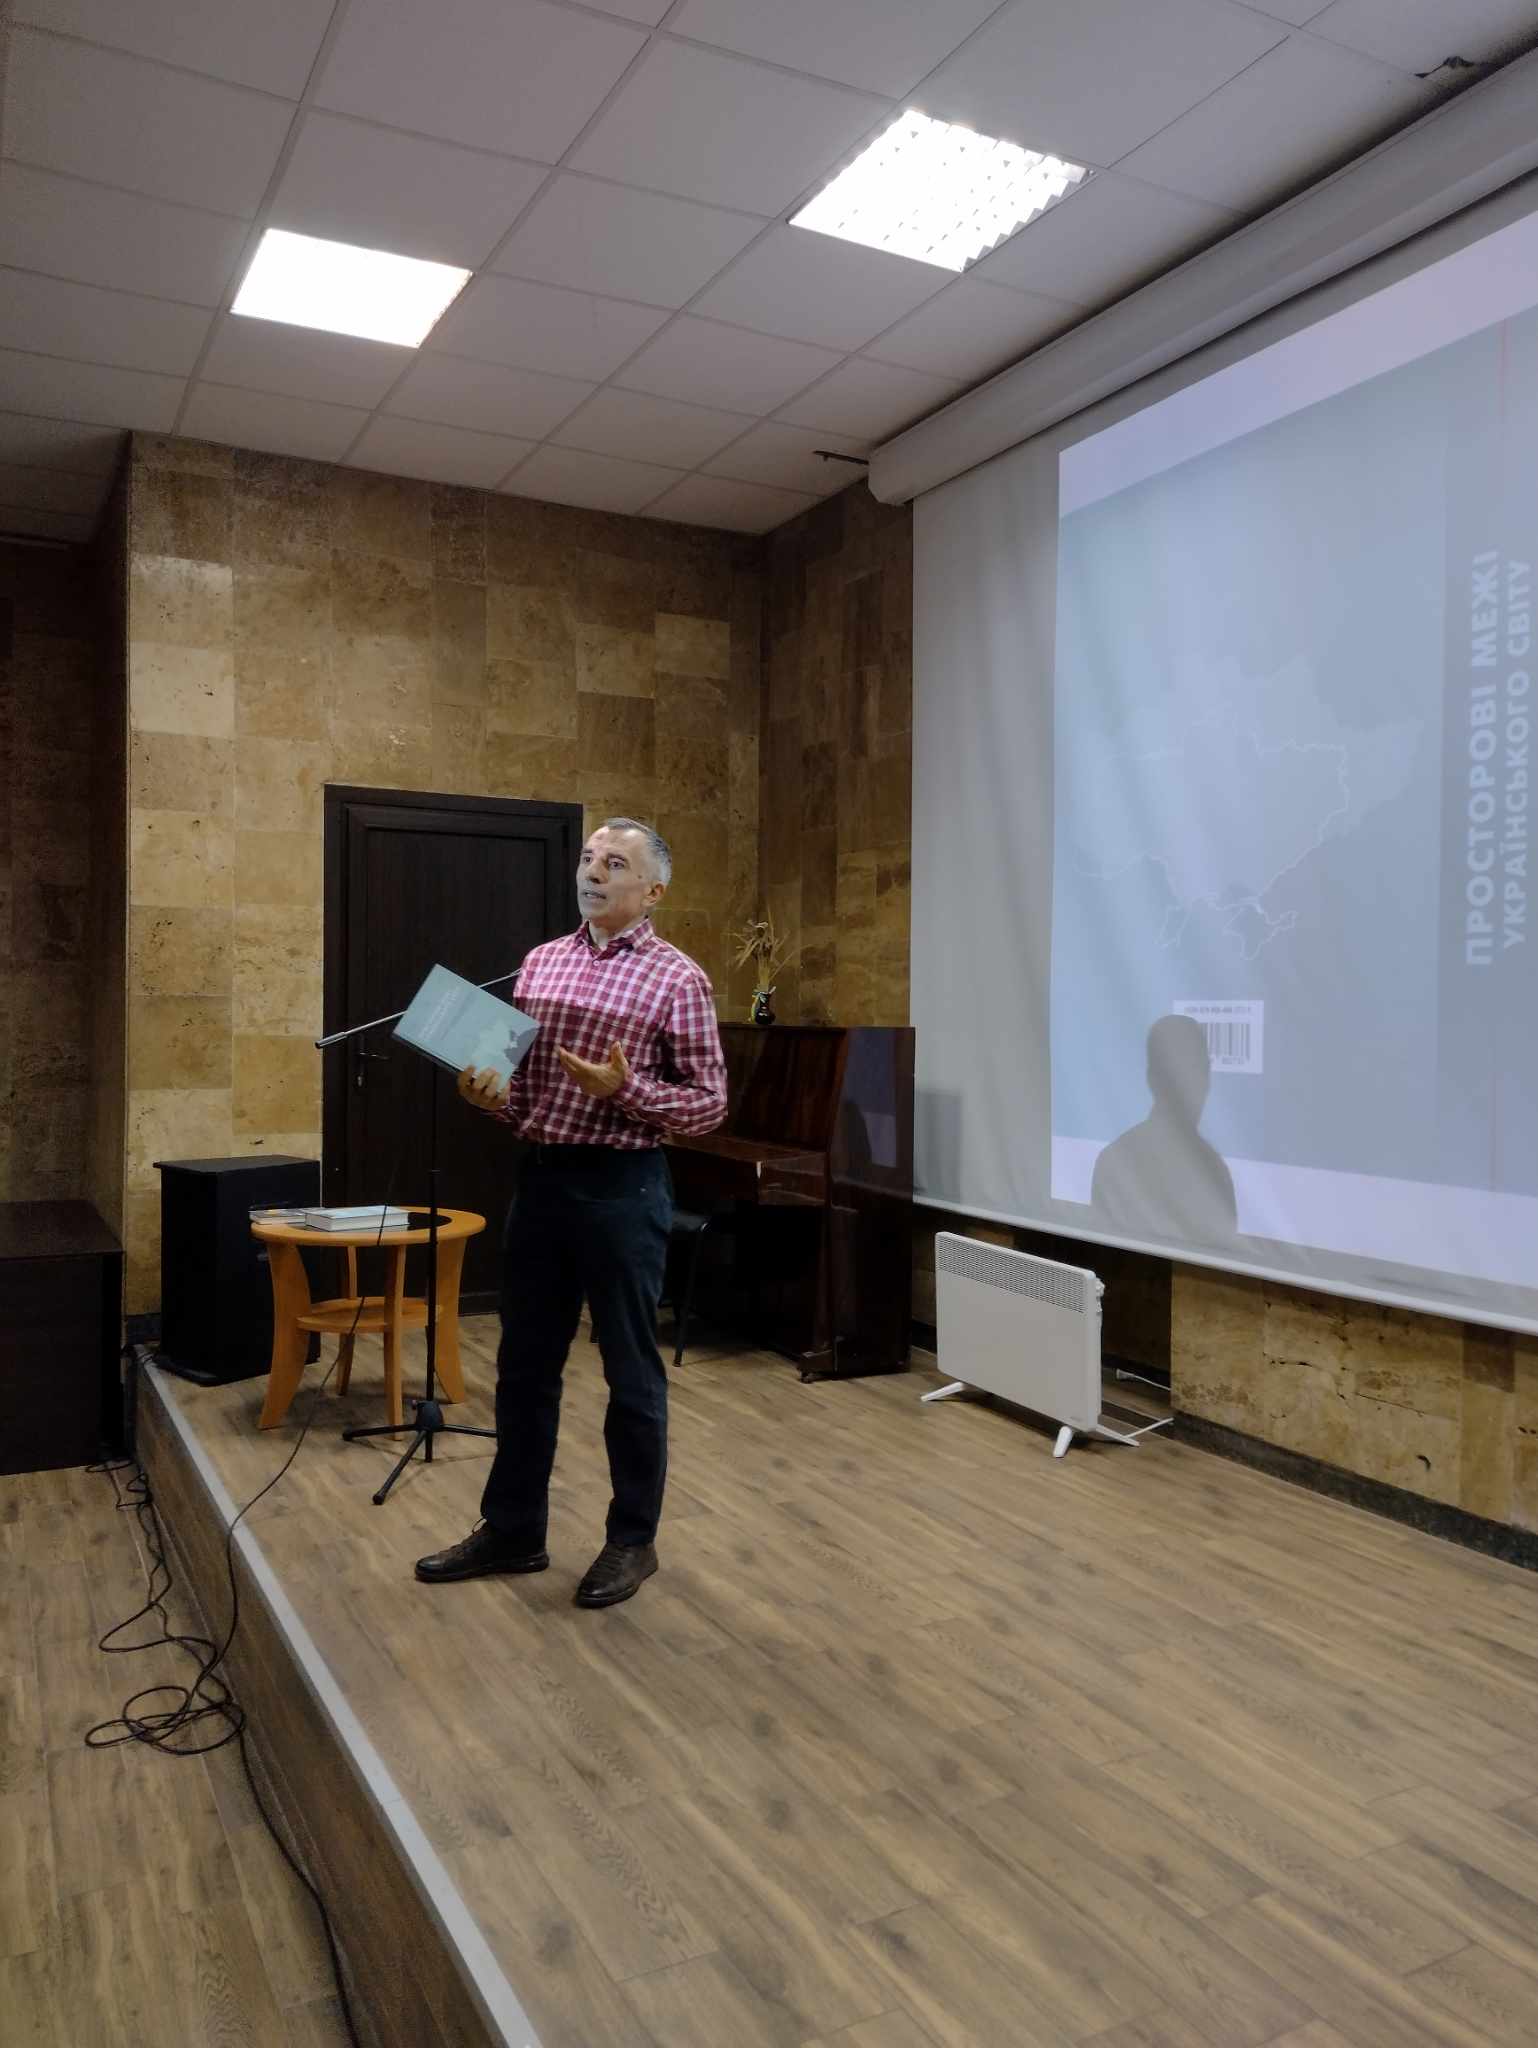 10 квітня в Музеї відбулася творча зустріч з професором В. Брехуненком, відомим українським істориком